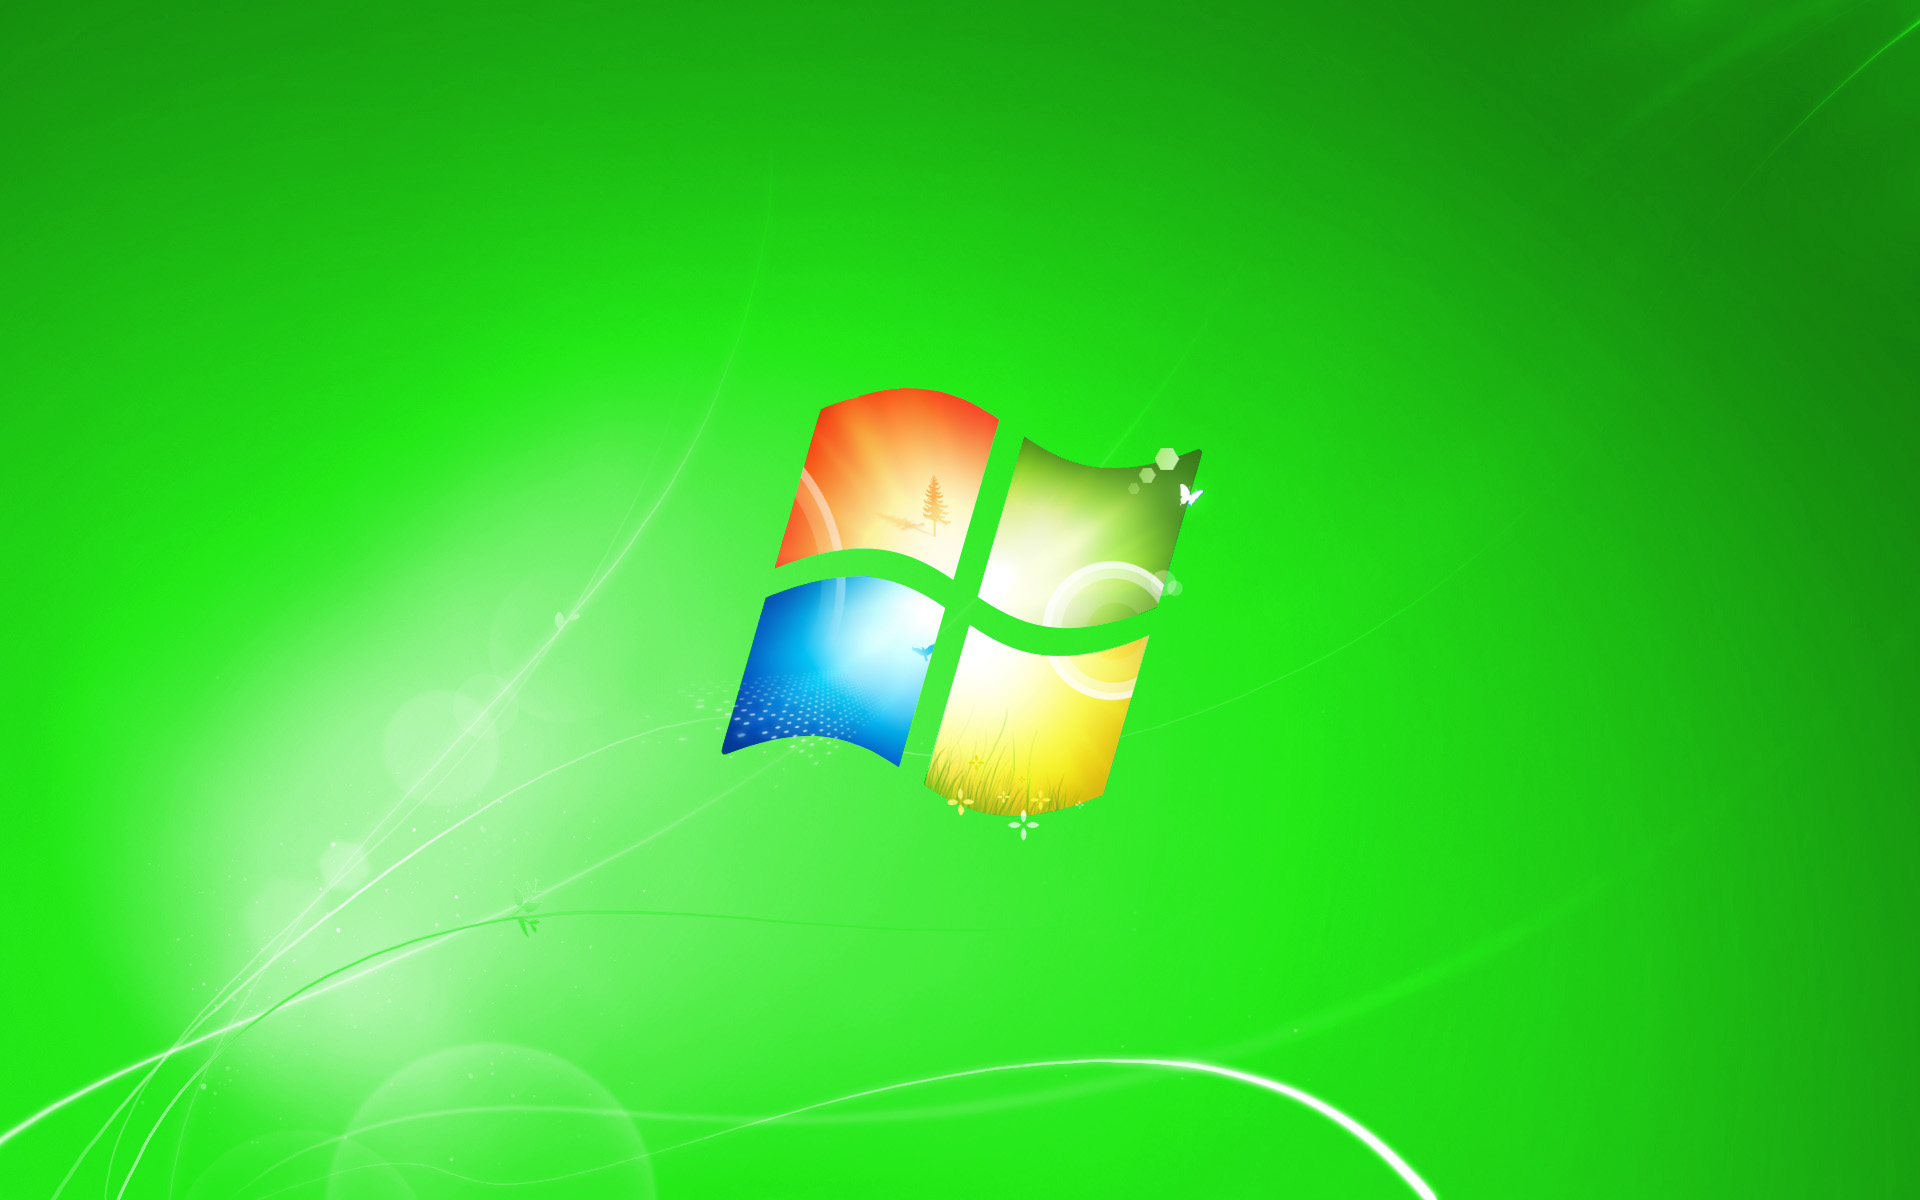 Khám phá thiết kế độc đáo và đầy sáng tạo của hình nền Windows 7 do RyanV666 sáng tạo, đã thu hút hàng triệu người sử dụng trên toàn thế giới.